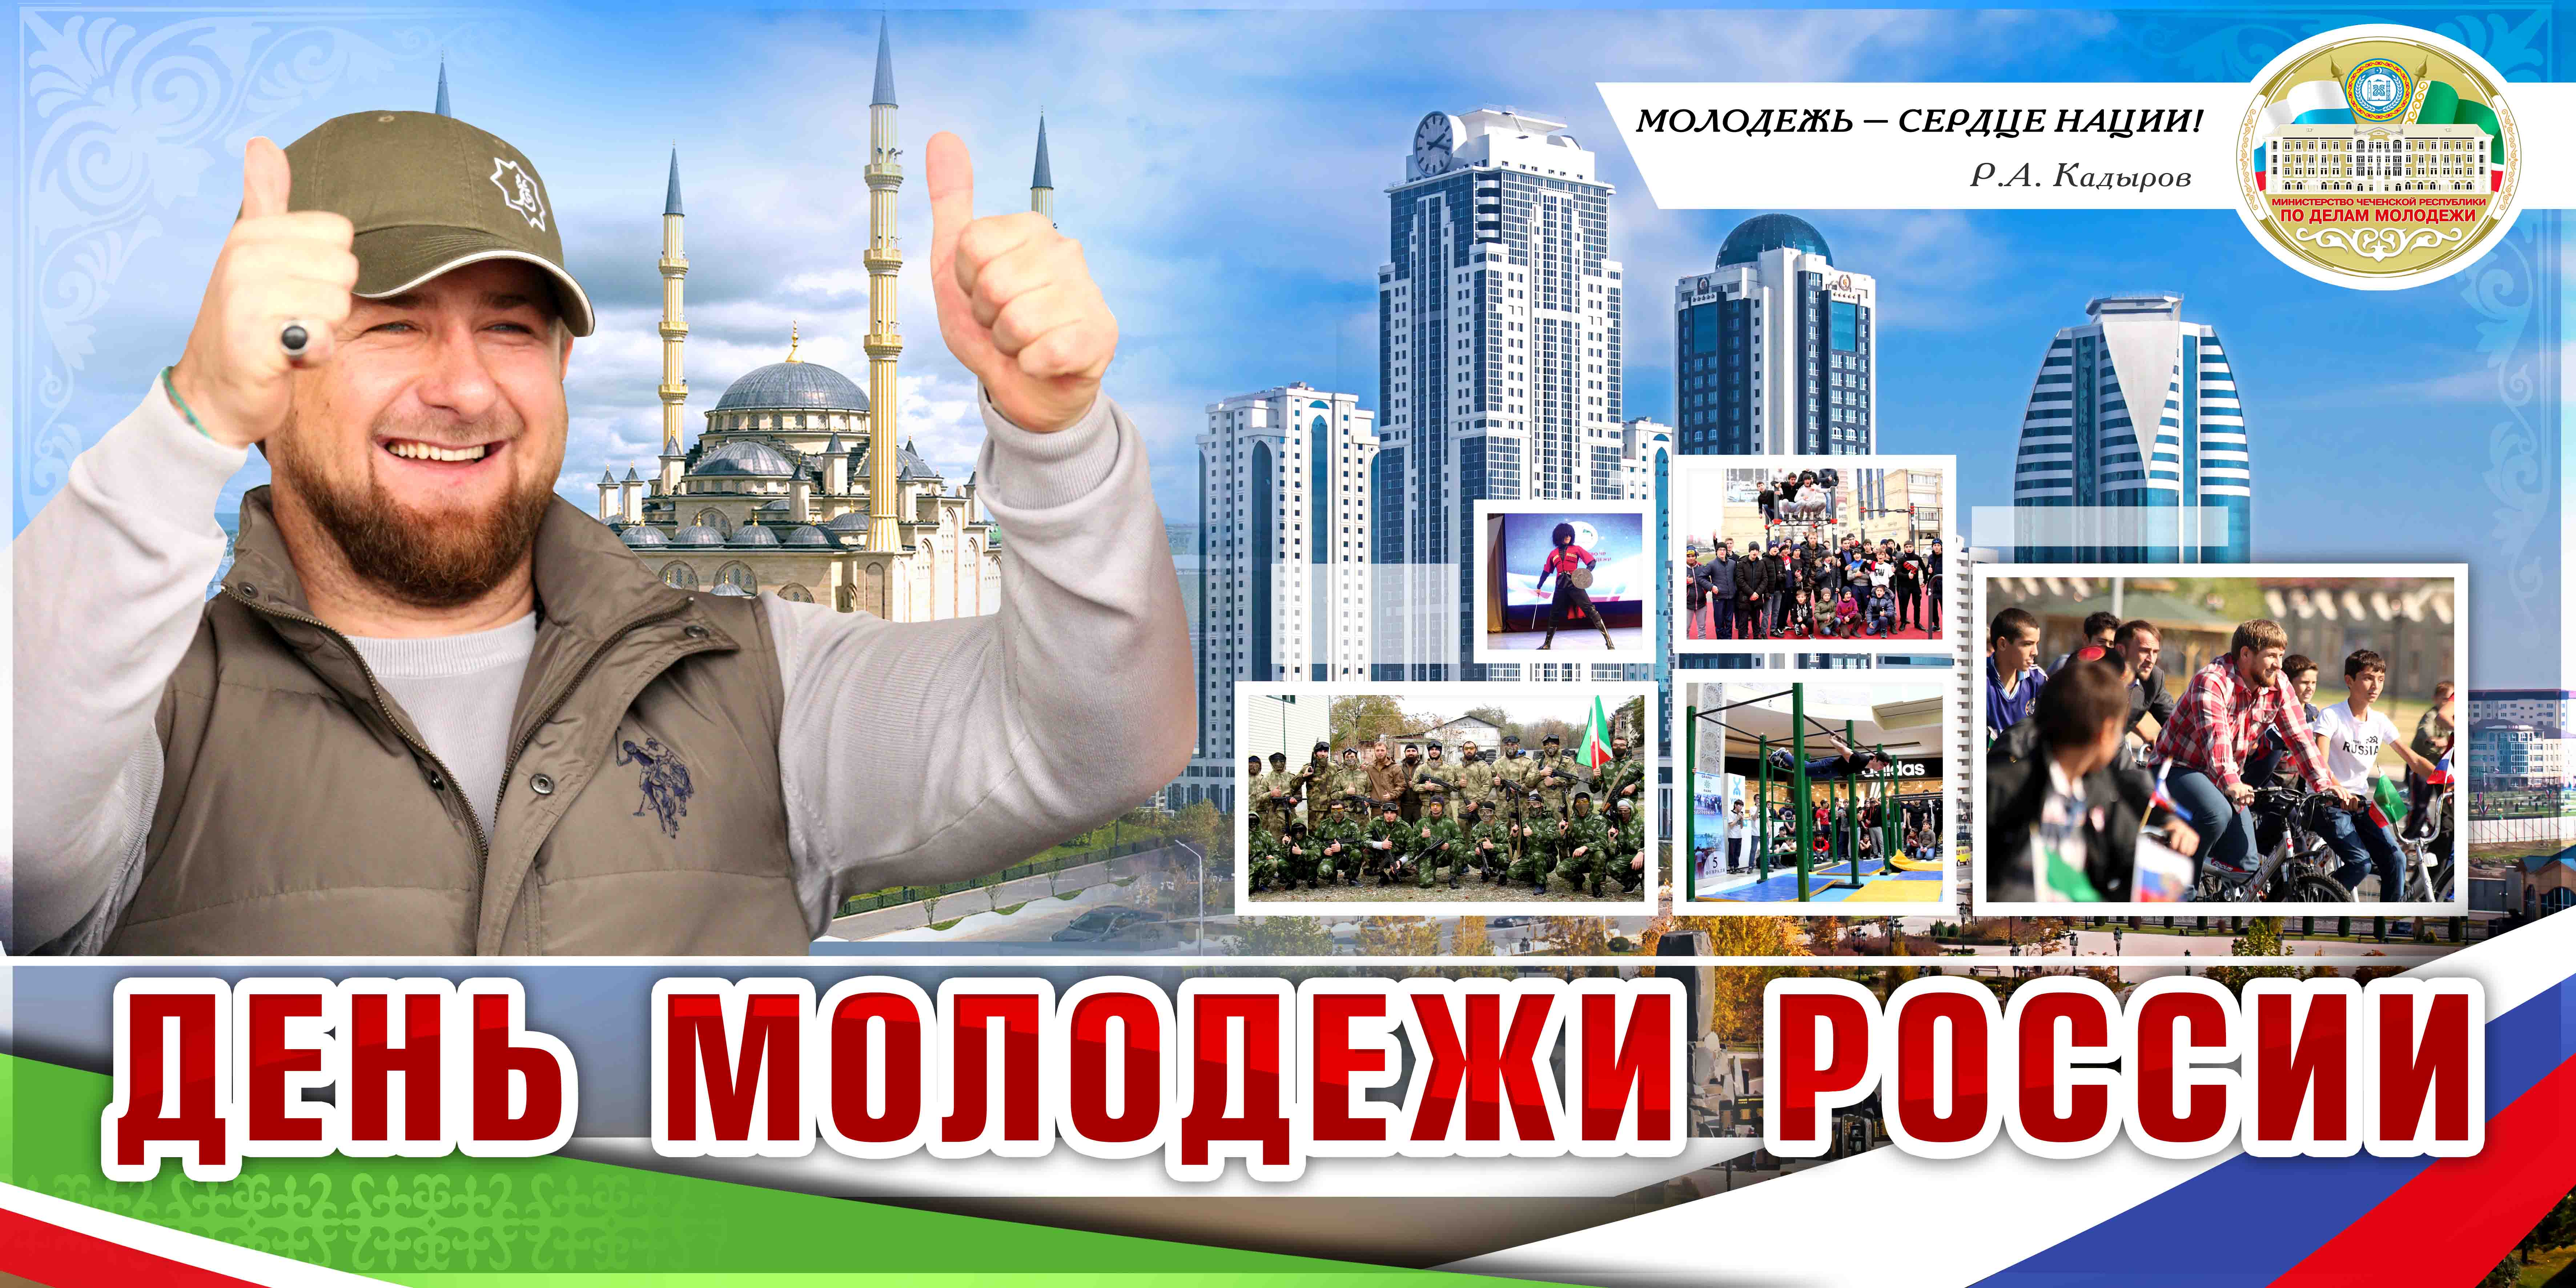 Республика 5 октября. День молодежи в Грозном. День Чеченской молодежи. День молодежи Чеченской Республики. Молодежь Чеченской Республики.